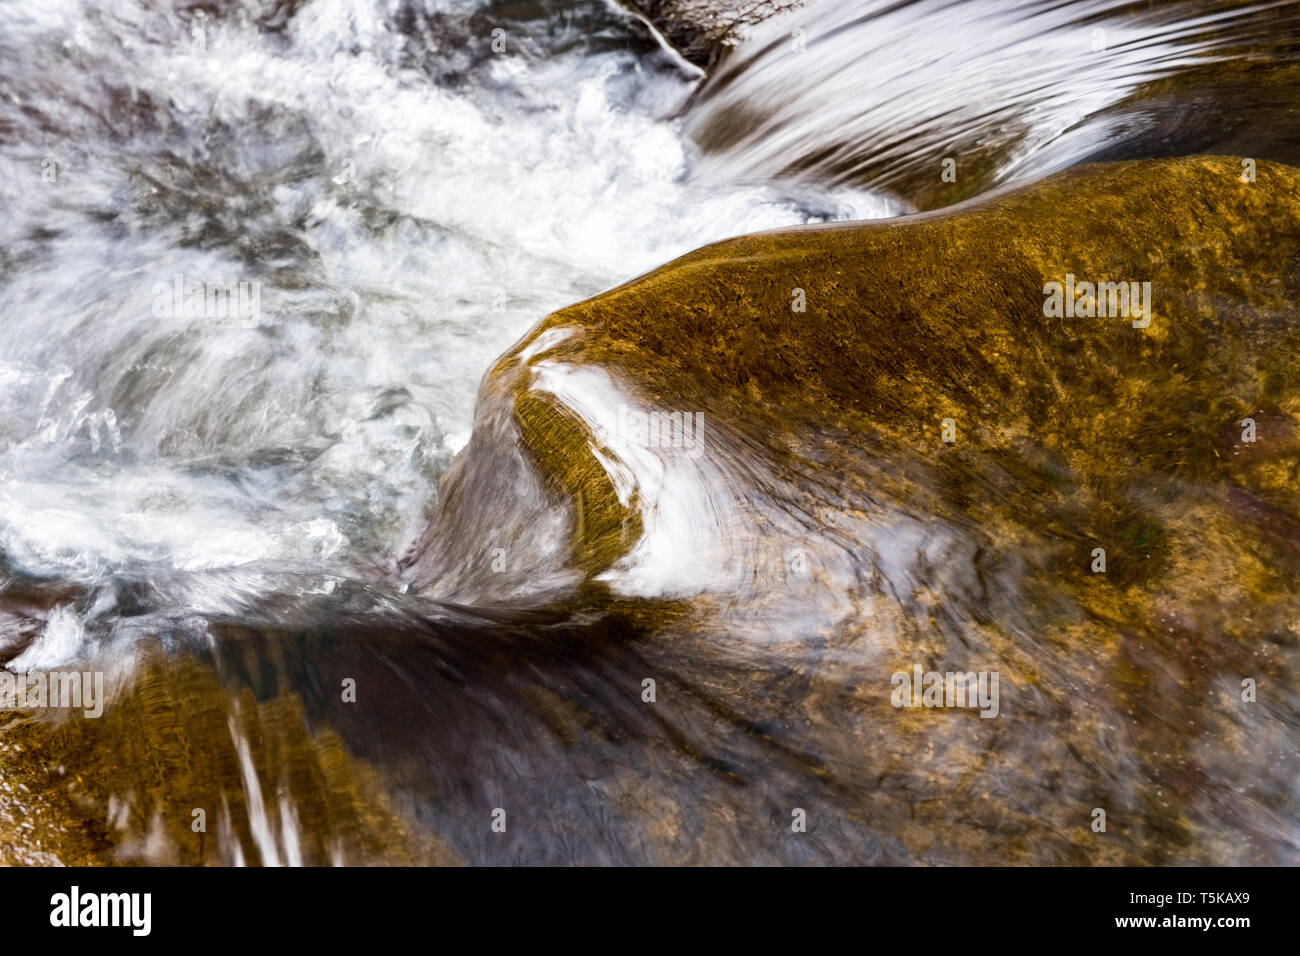 El agua haciéndola rodar sobre las piedras en un arroyo de montaña Foto de stock